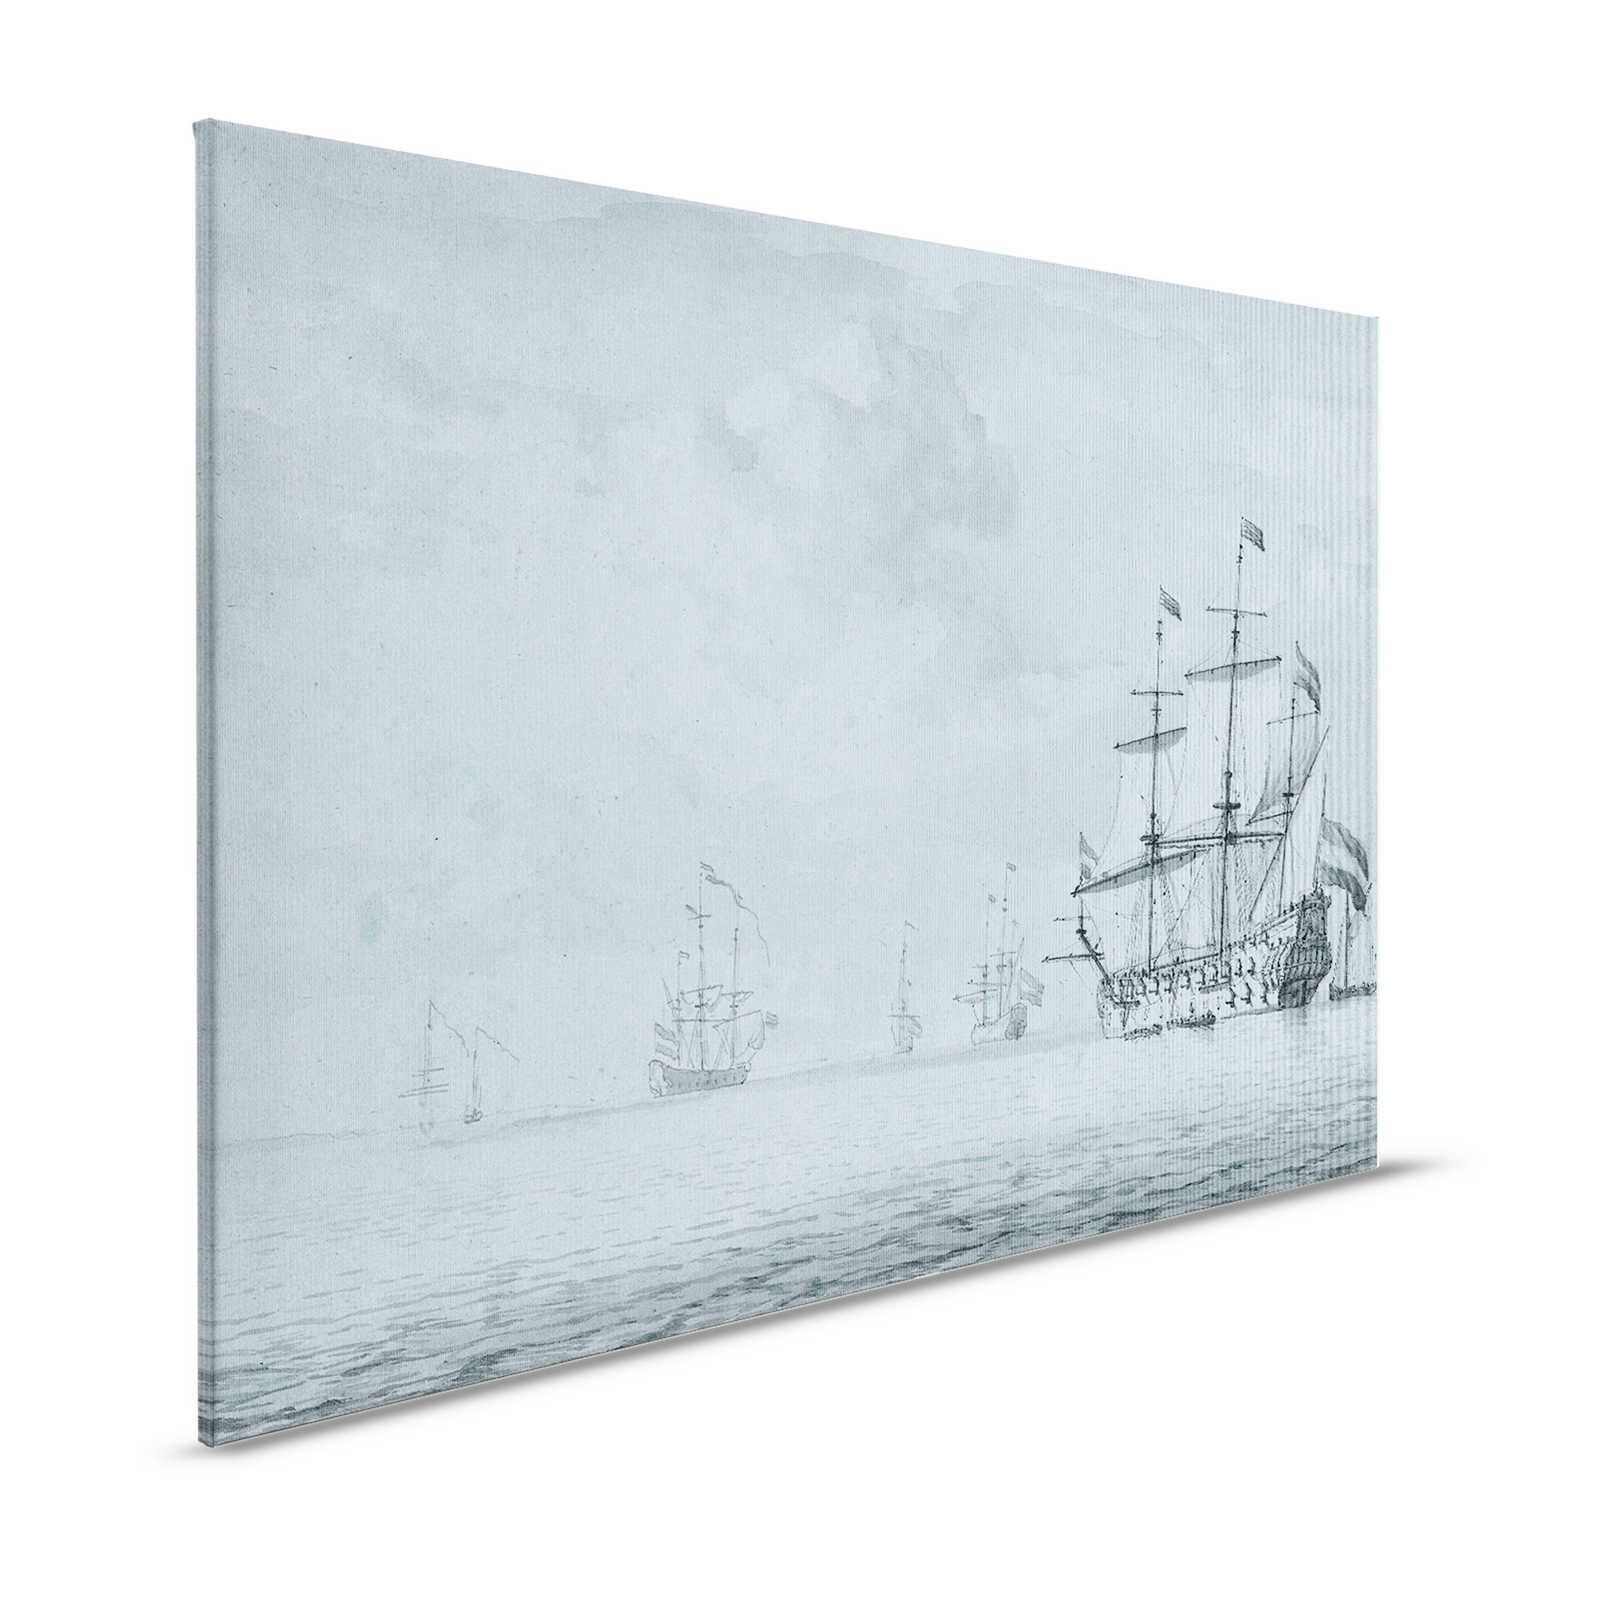 Op zee 1 - Grijsblauw Canvas schilderij Schepen Vintage schilderstijl - 1.20 m x 0.80 m
